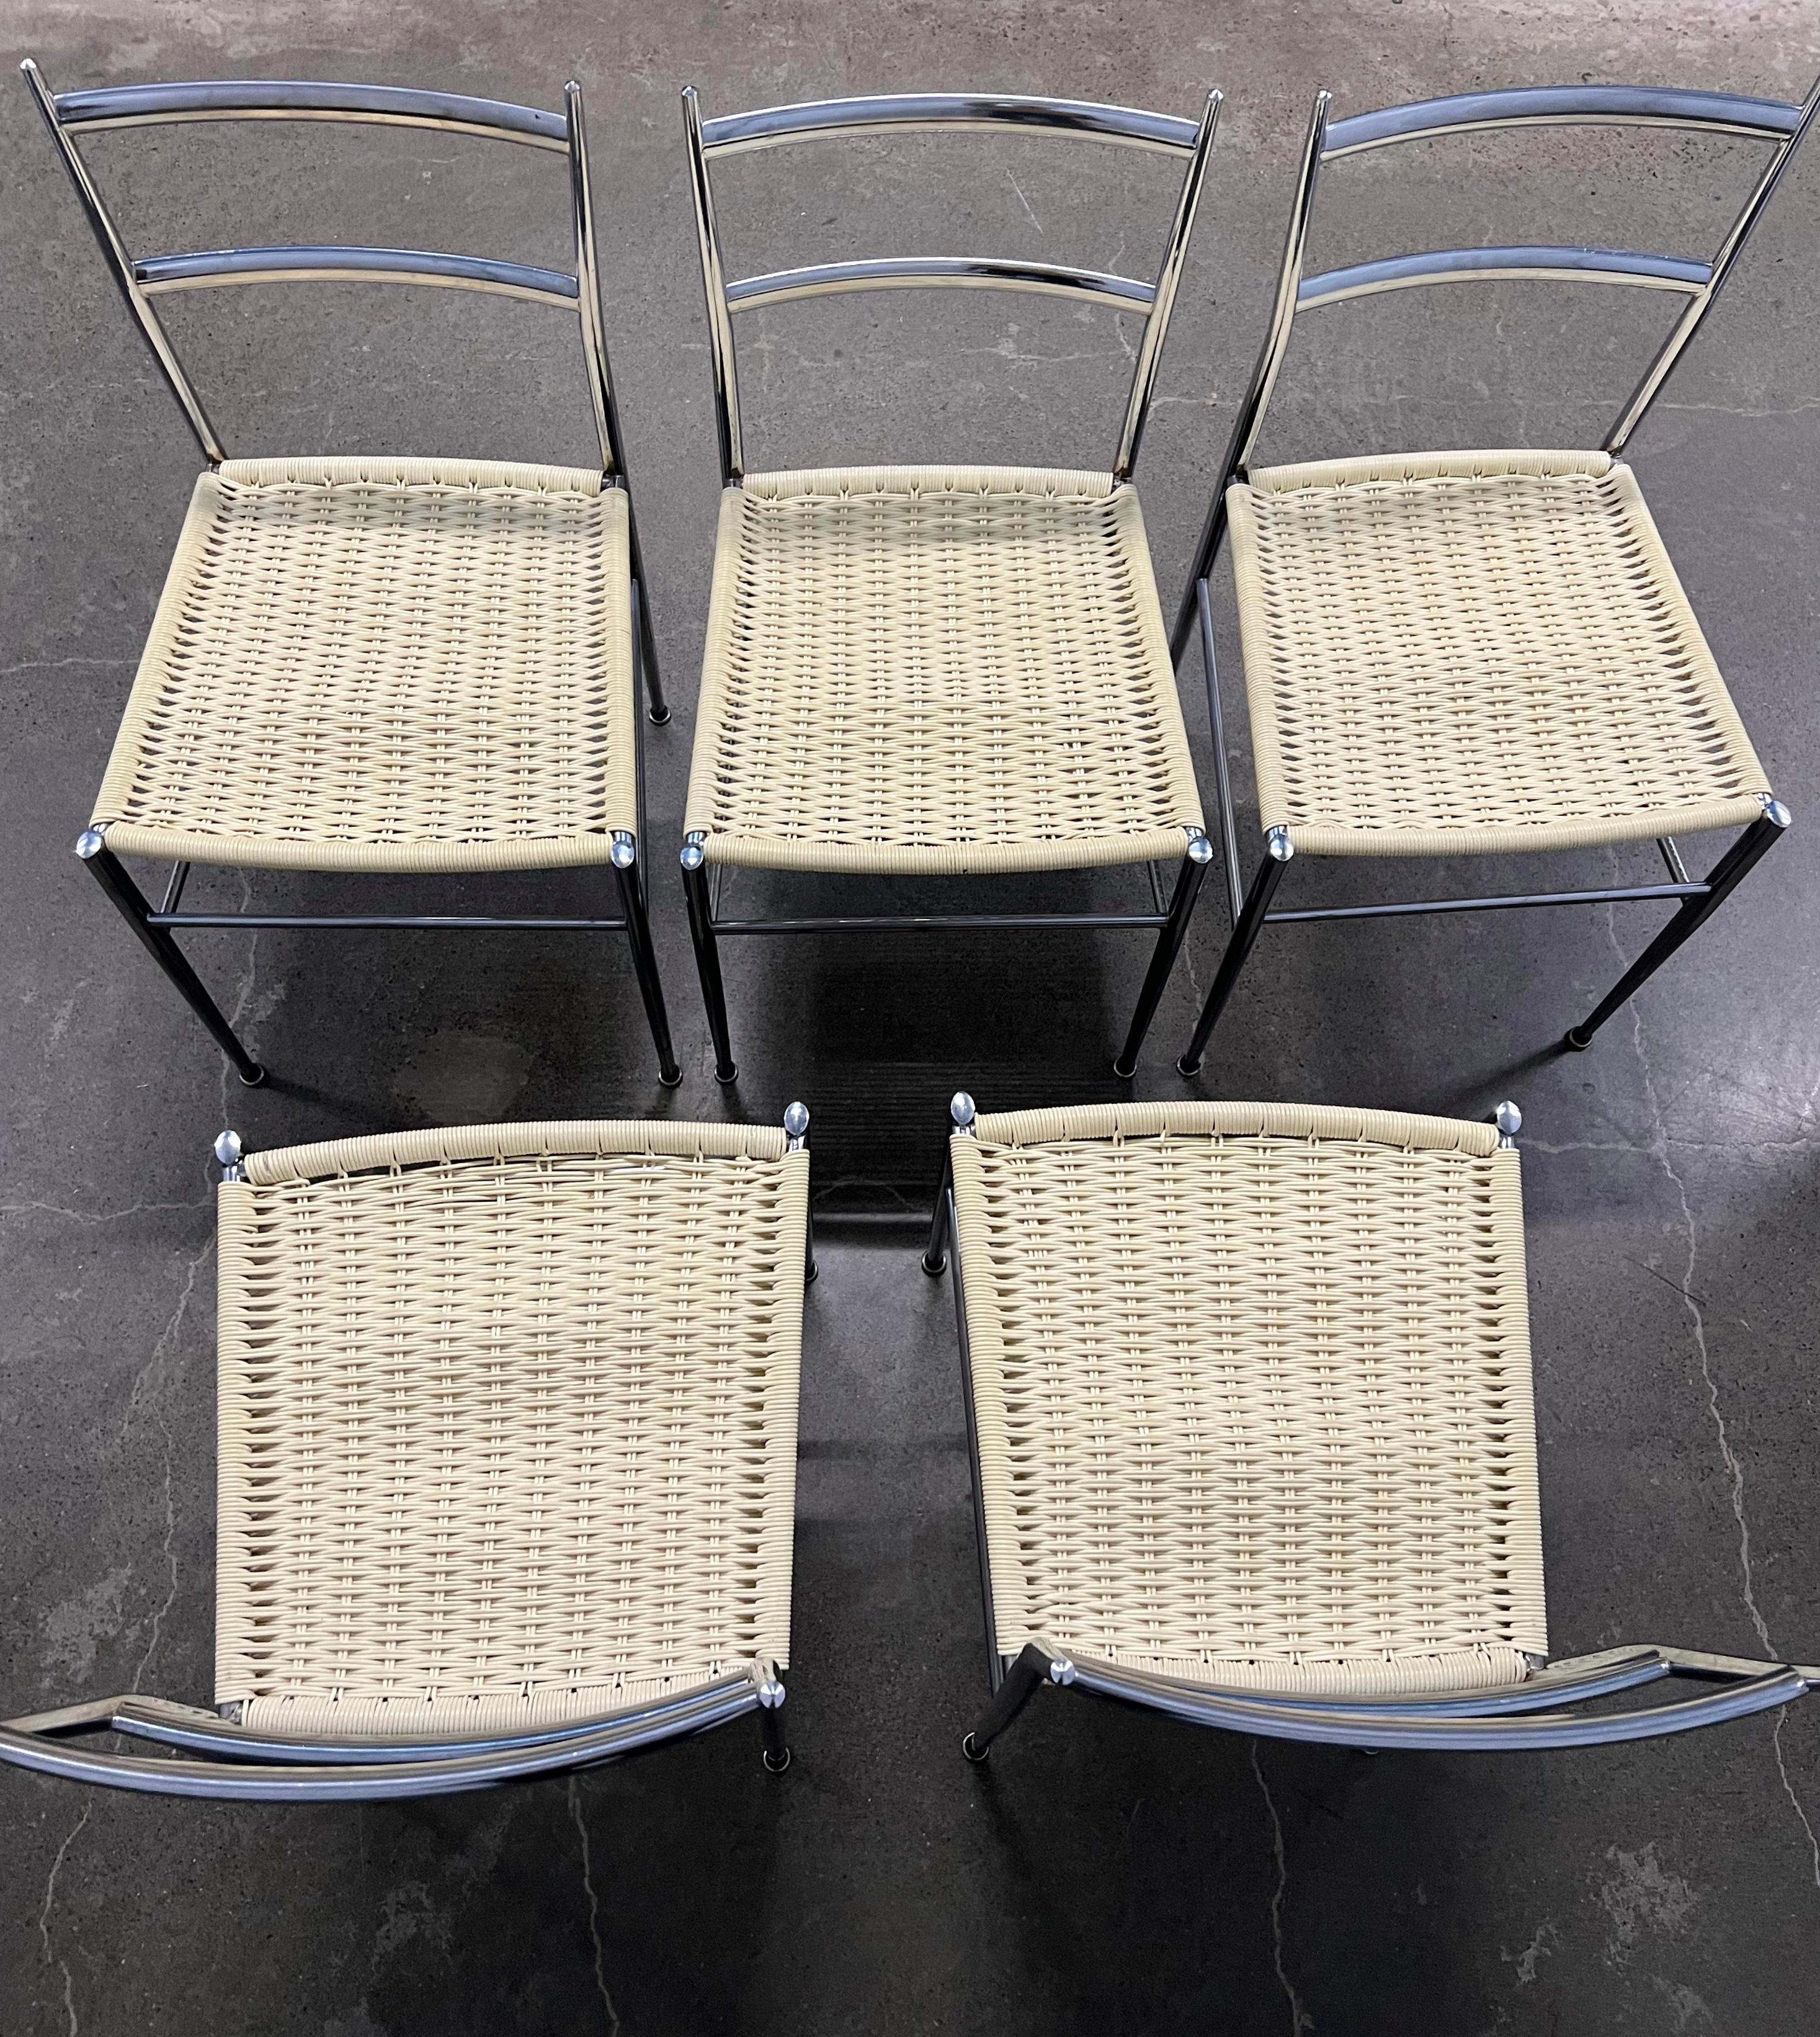 Gio Ponti, architecte et designer italien influent, a créé la chaise Superleggera en 1957. La philosophie du design de Gio Ponti était centrée sur la combinaison de la forme et de la fonction pour créer des meubles intemporels et élégants. La chaise